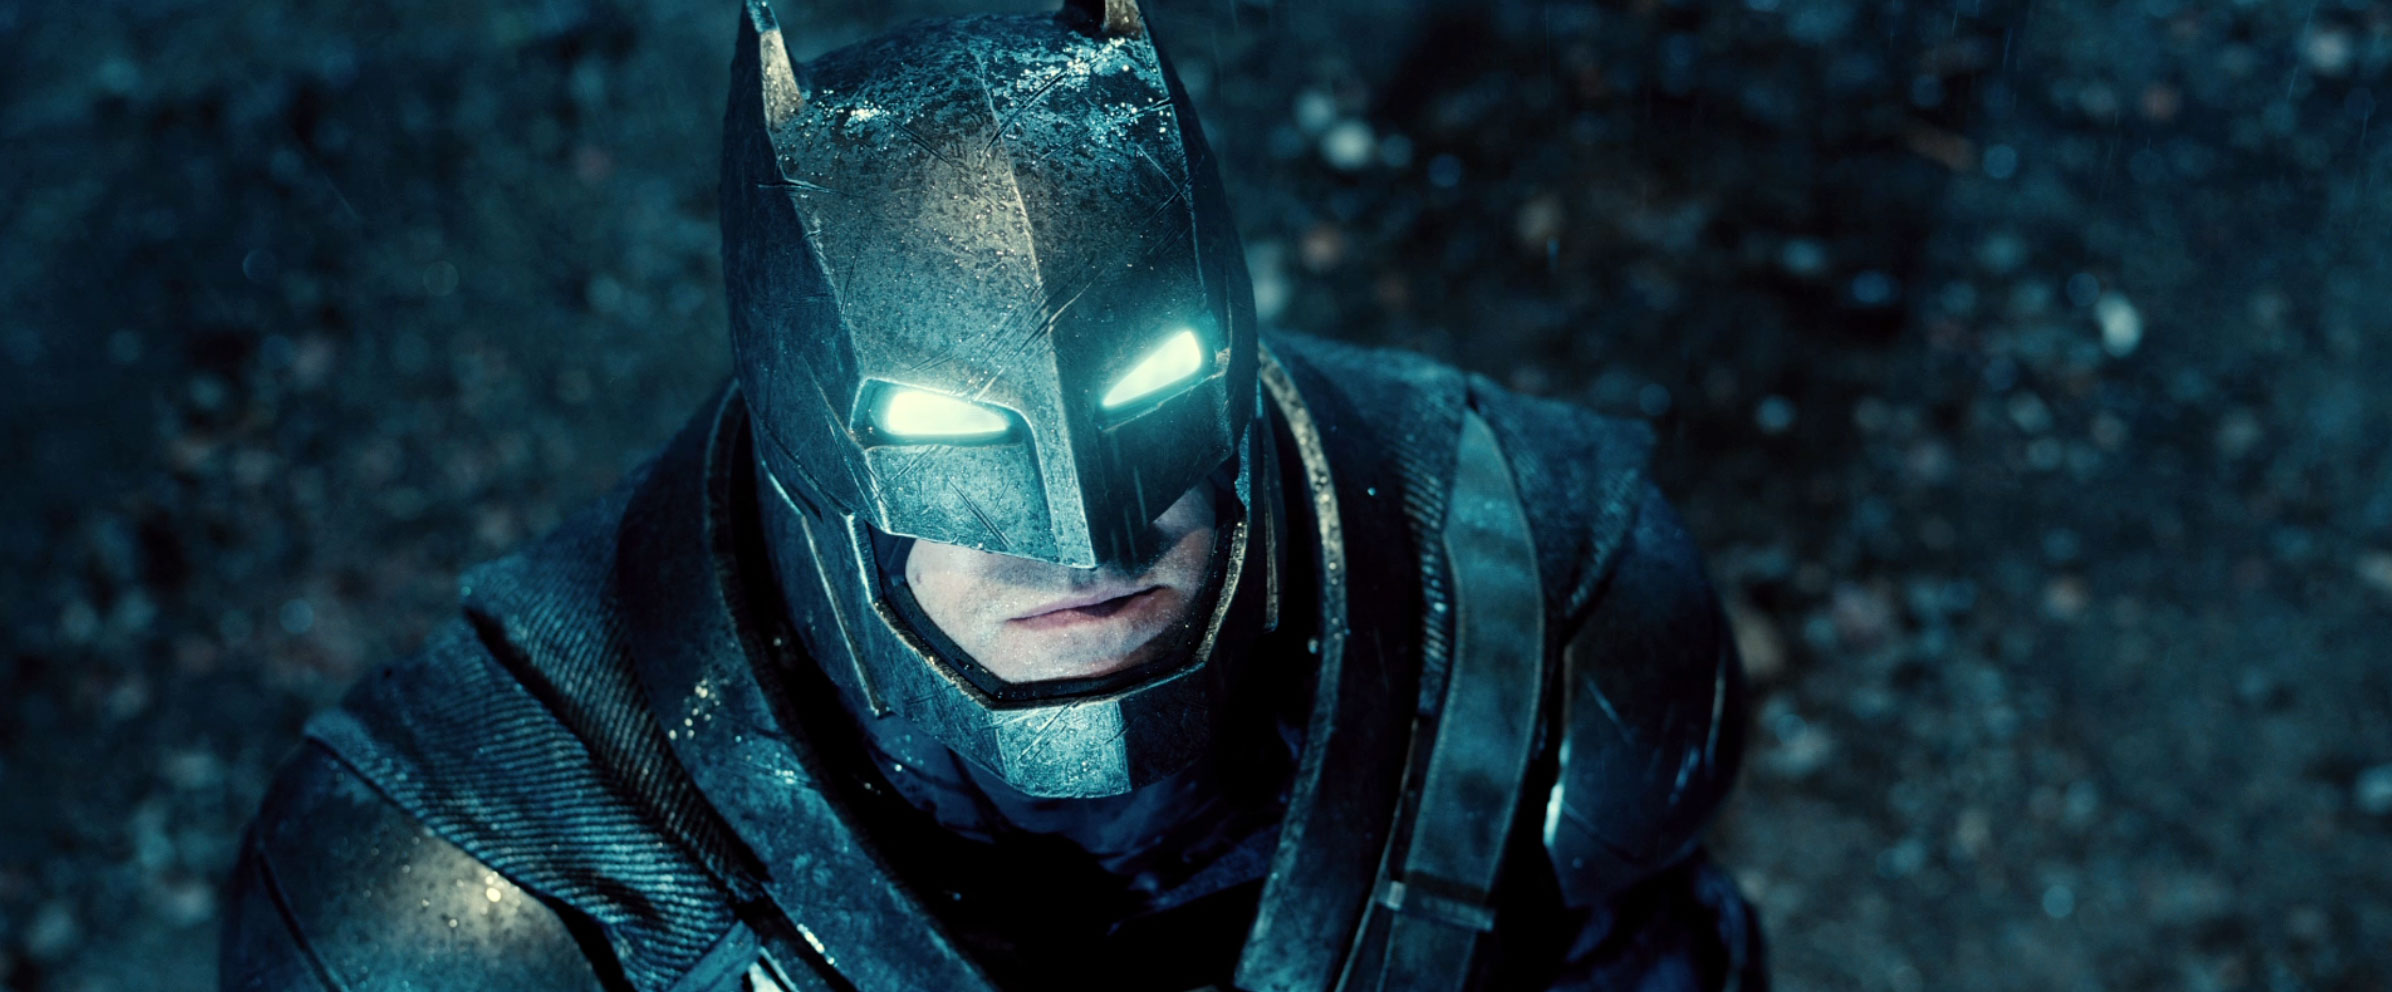 Ben Affleck's armored Batsuit in 'Batman v Superman' is all CGI | Batman  News